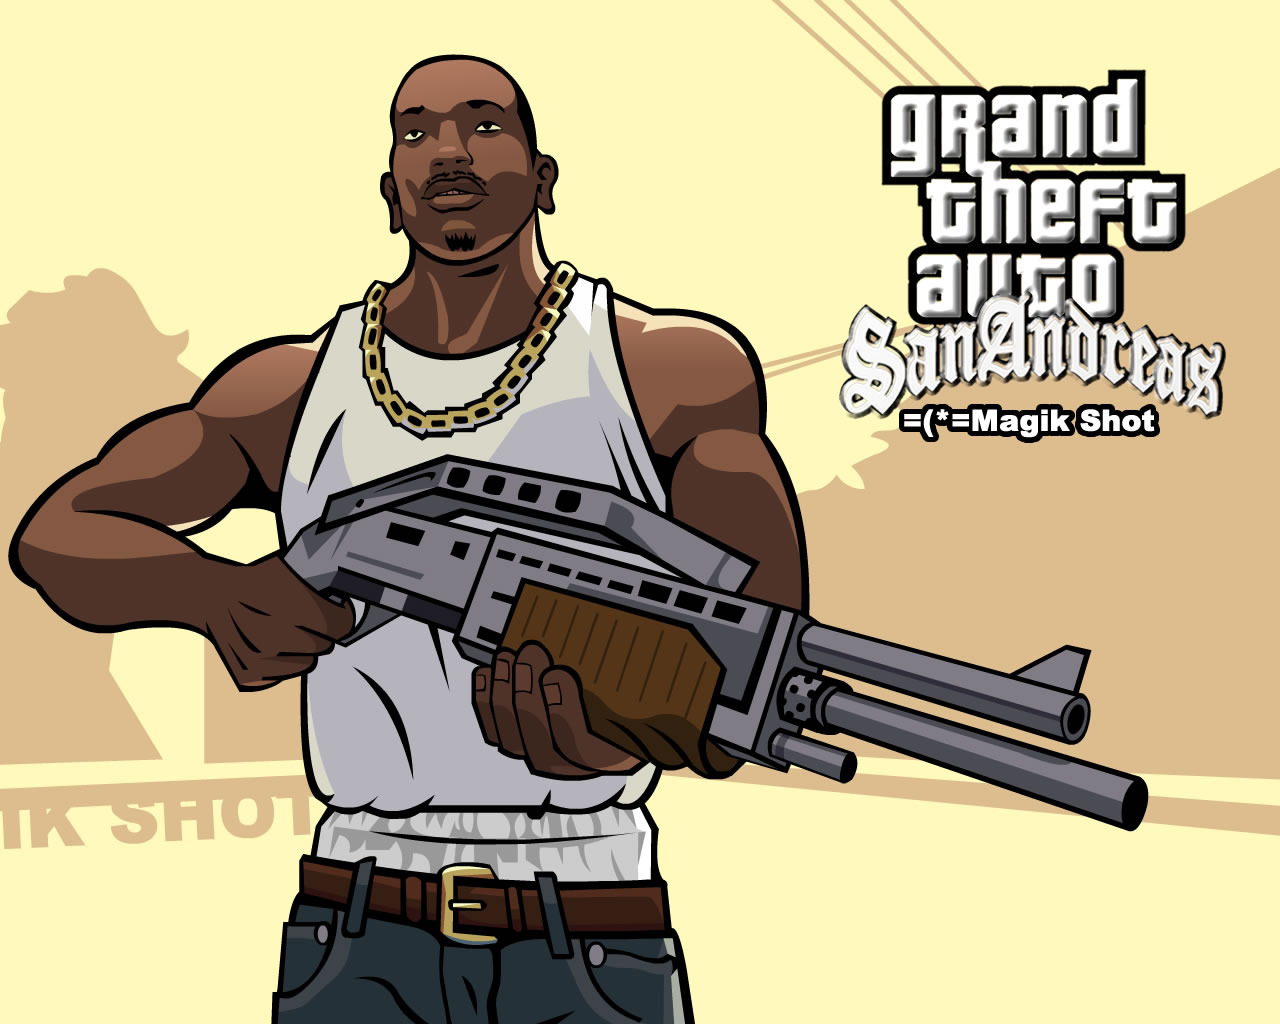 Cral "CJ" Johnson nhân vật chính trong GTA San Andreas - cũng đẹp trai nhỉ :v